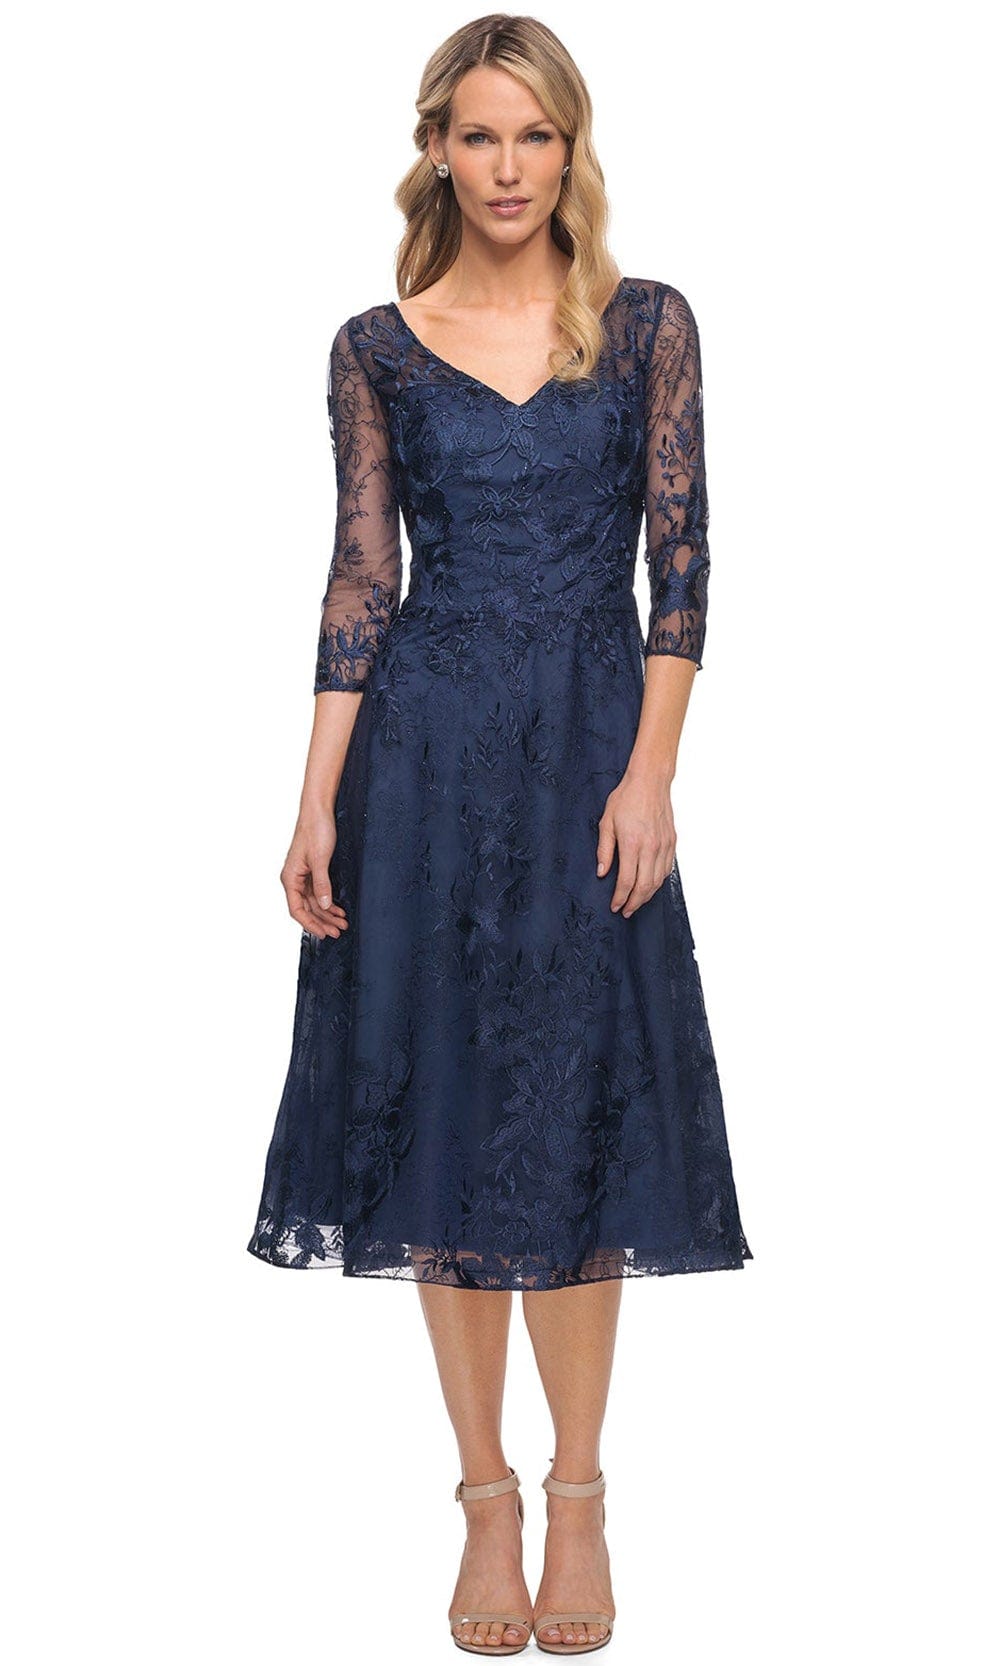 Image of La Femme 30016 - Embroidered Lace V Neck Short Dress